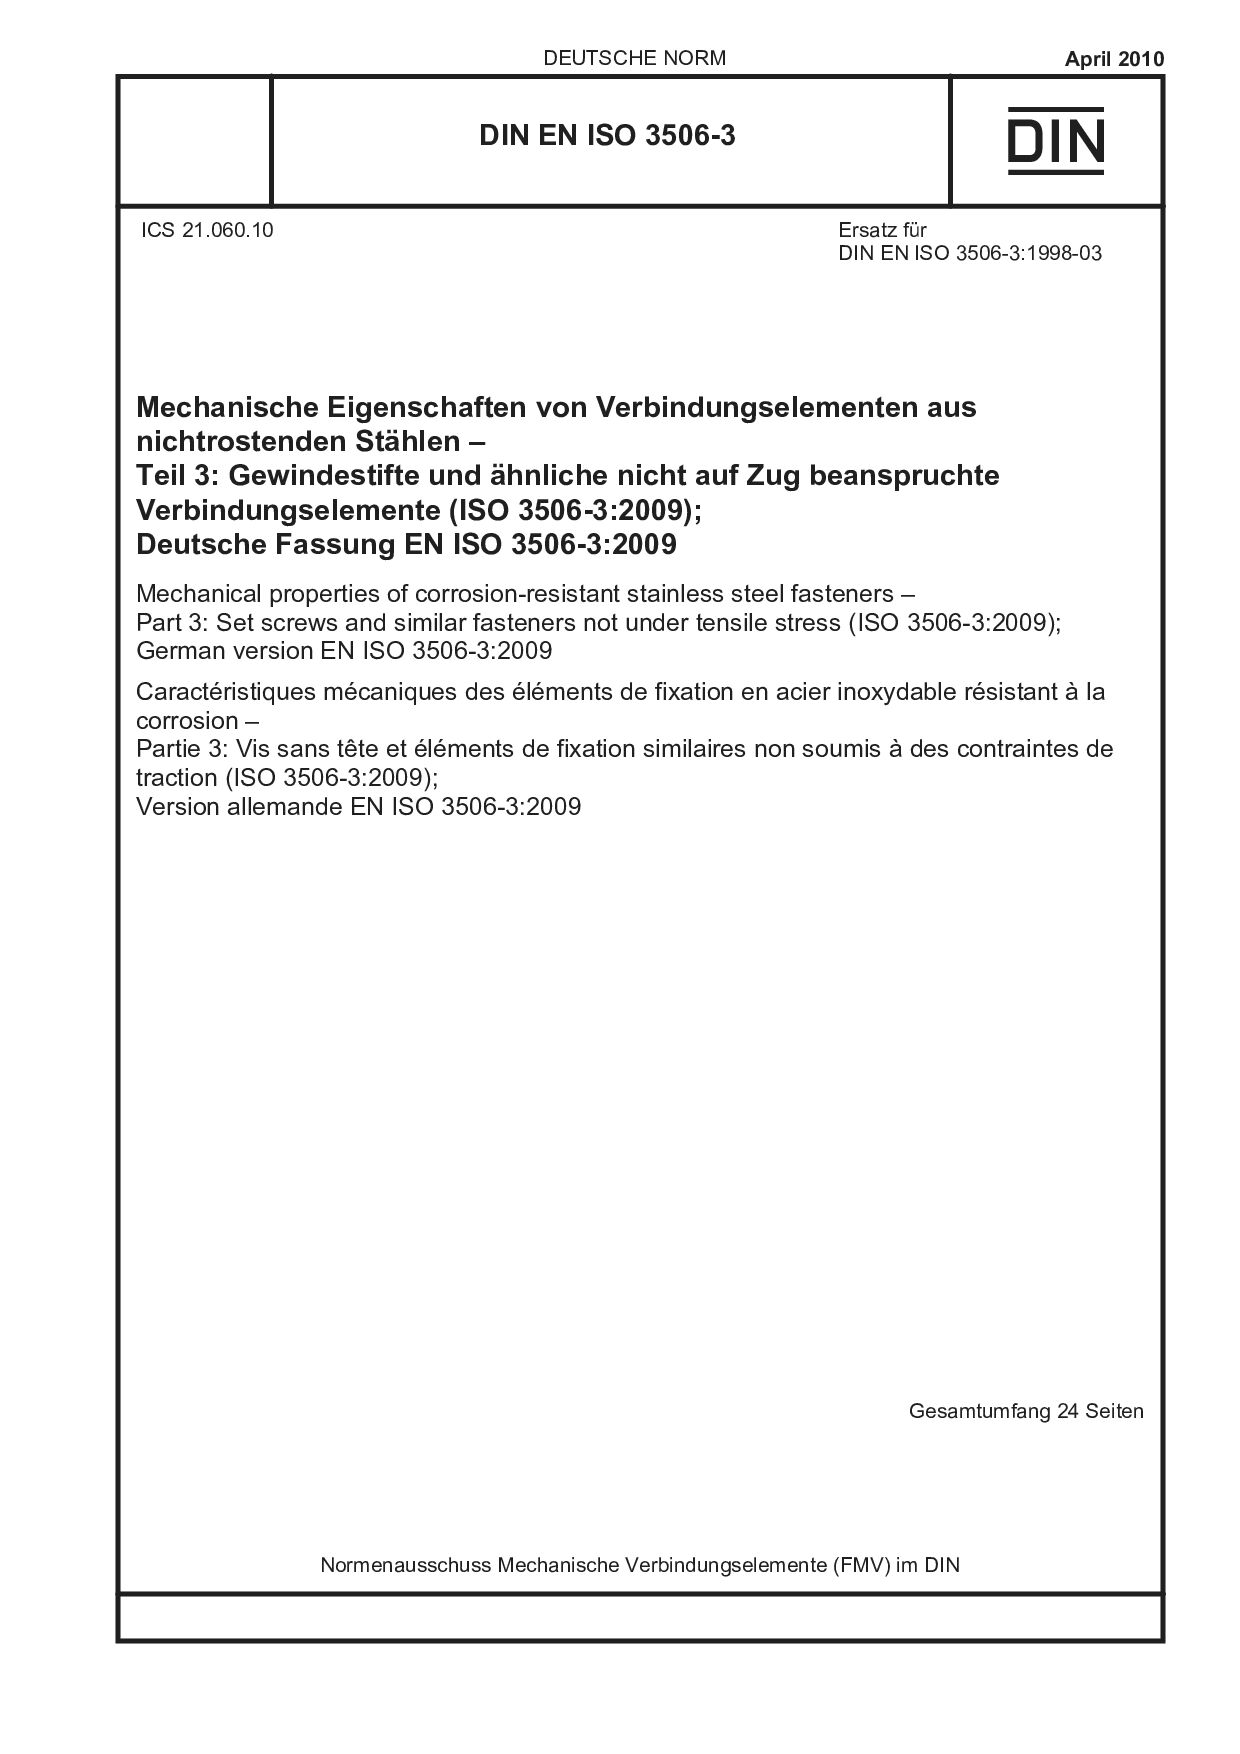 DIN EN ISO 3506-3:2010